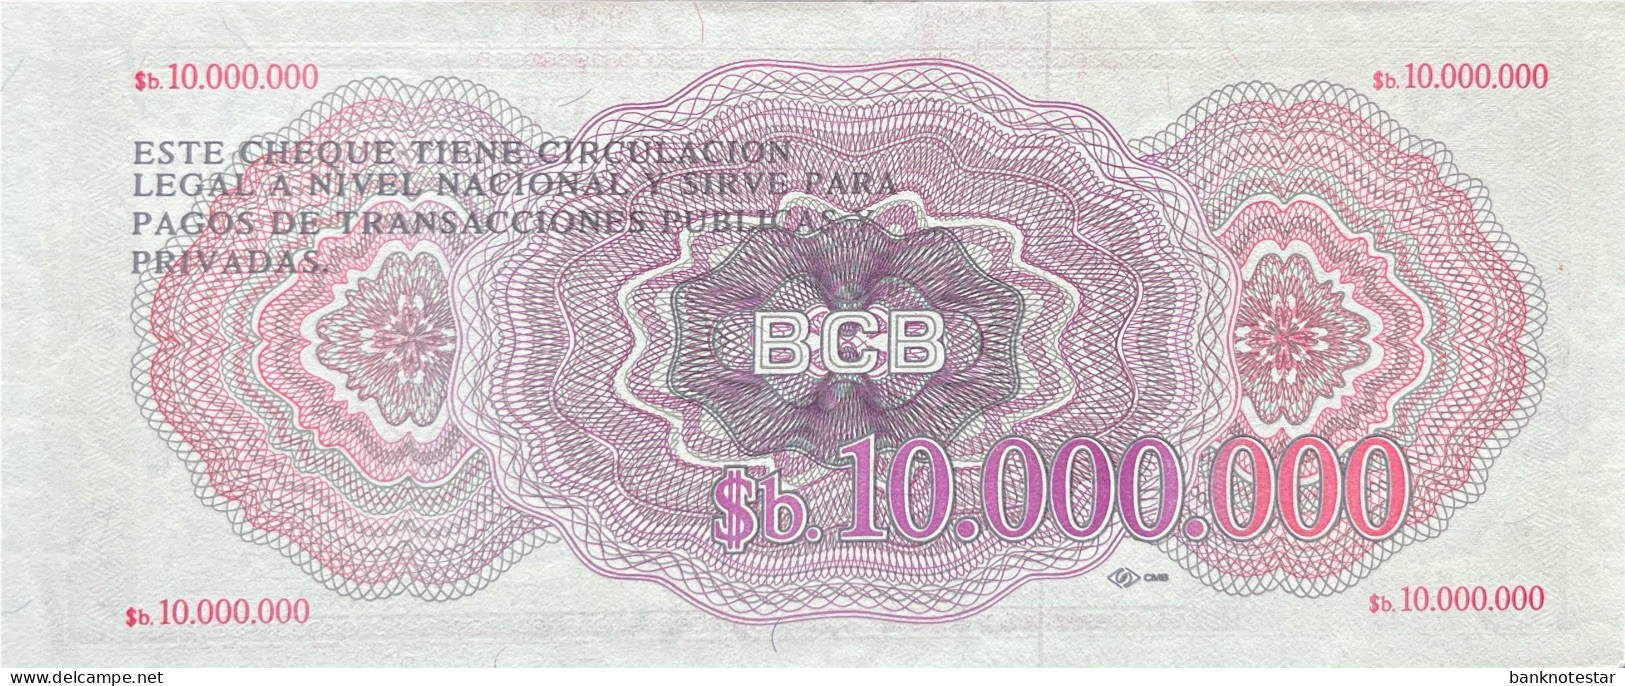 Bolivia 10.000.000 Pesos Bolivianos, P-192B (D.1985) - B0000303 - UNC - RARE - Bolivie